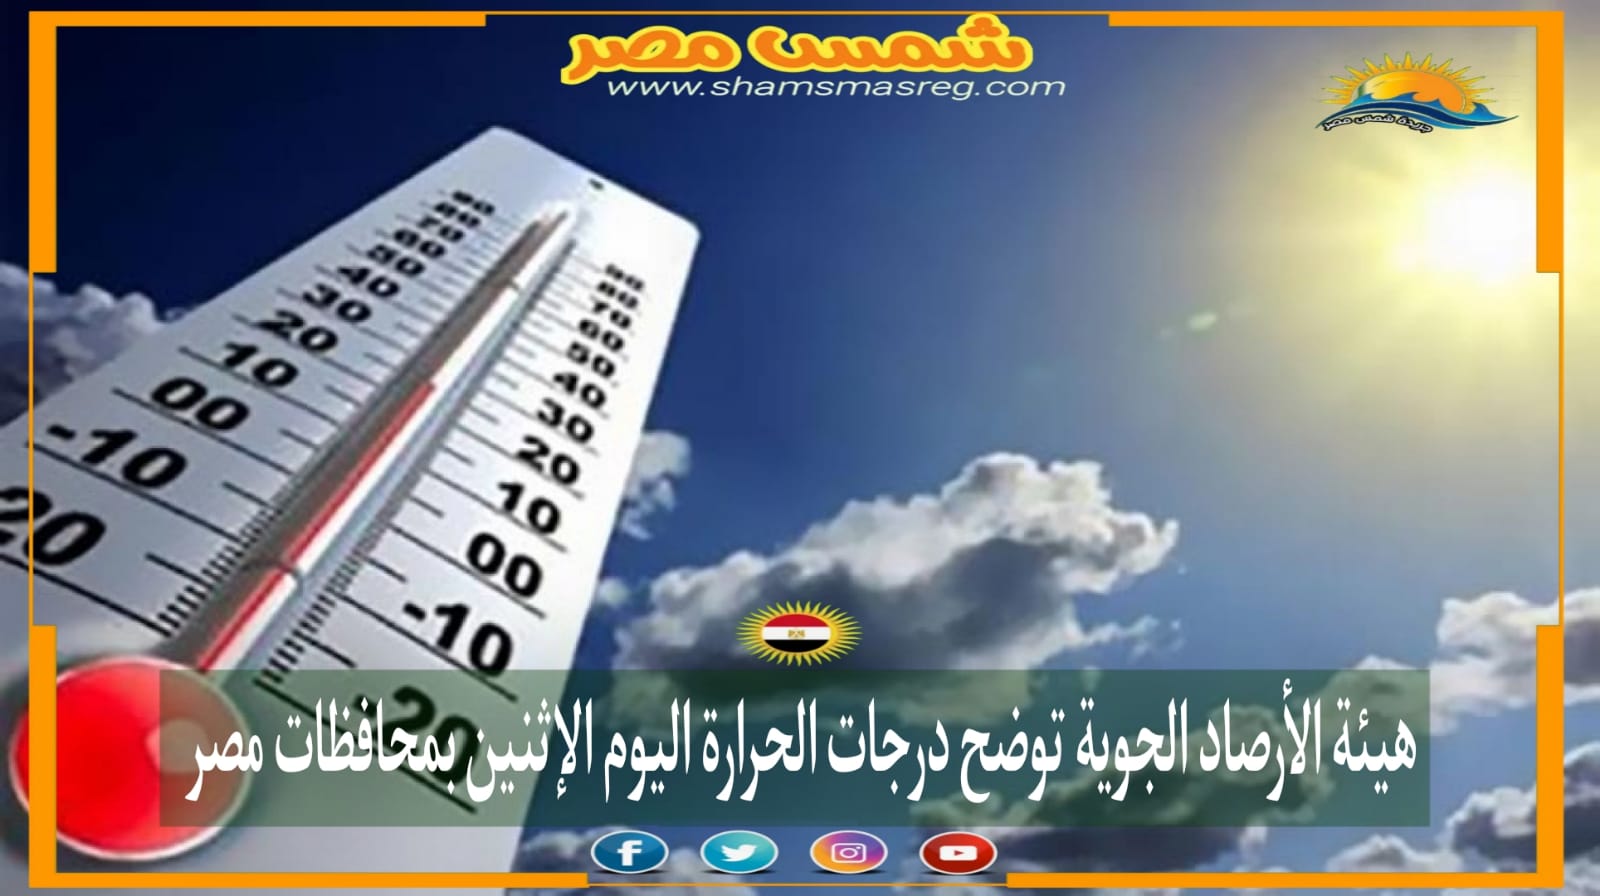 |شمس مصر|.. هيئة الأرصاد الجوية توضح درجات الحرارة اليوم الإثنين بمحافظات مصر 